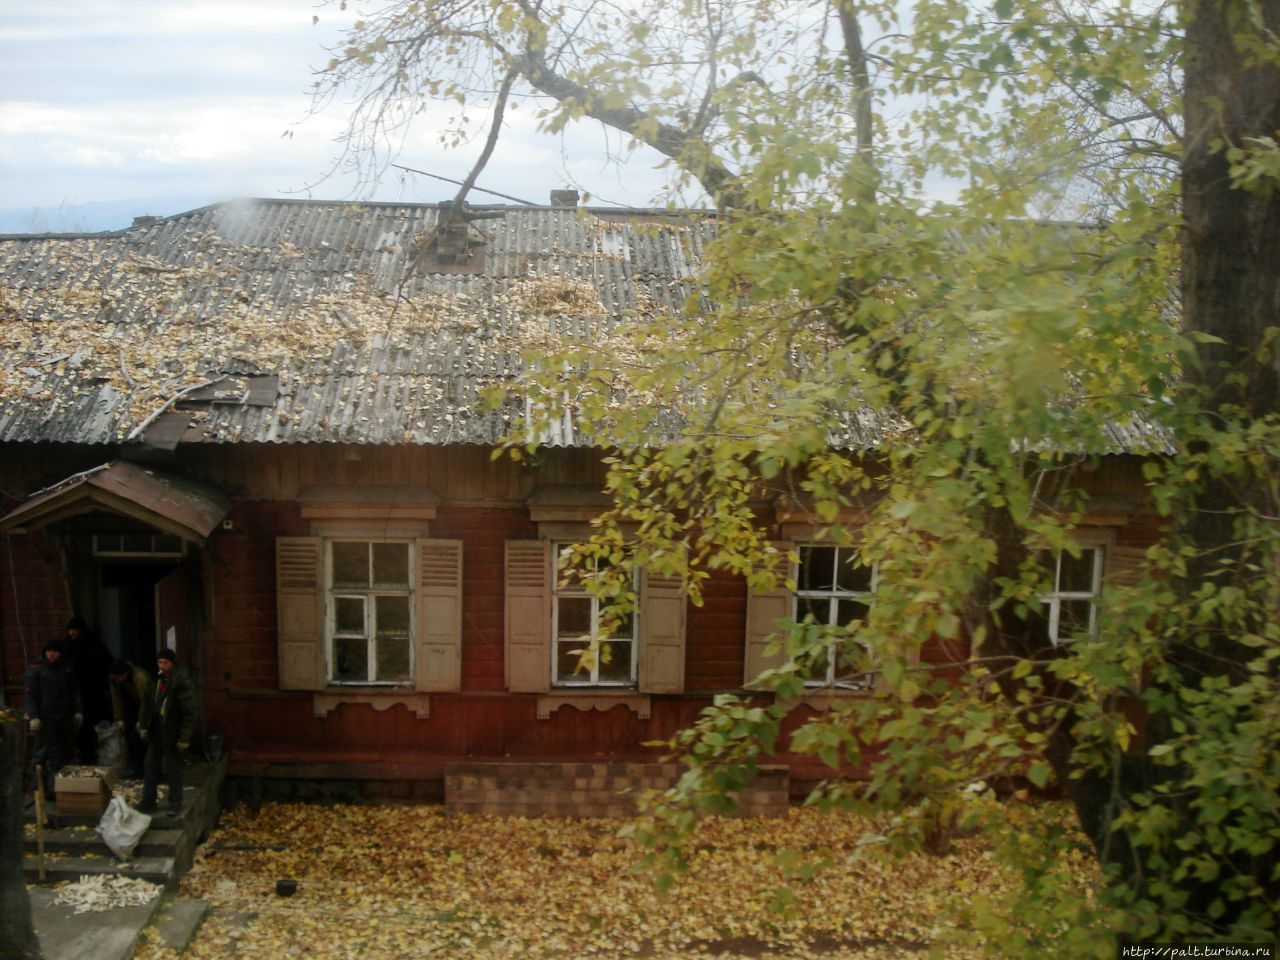 Кругобайкальская железная дорога. Романтика озеро Байкал, Россия